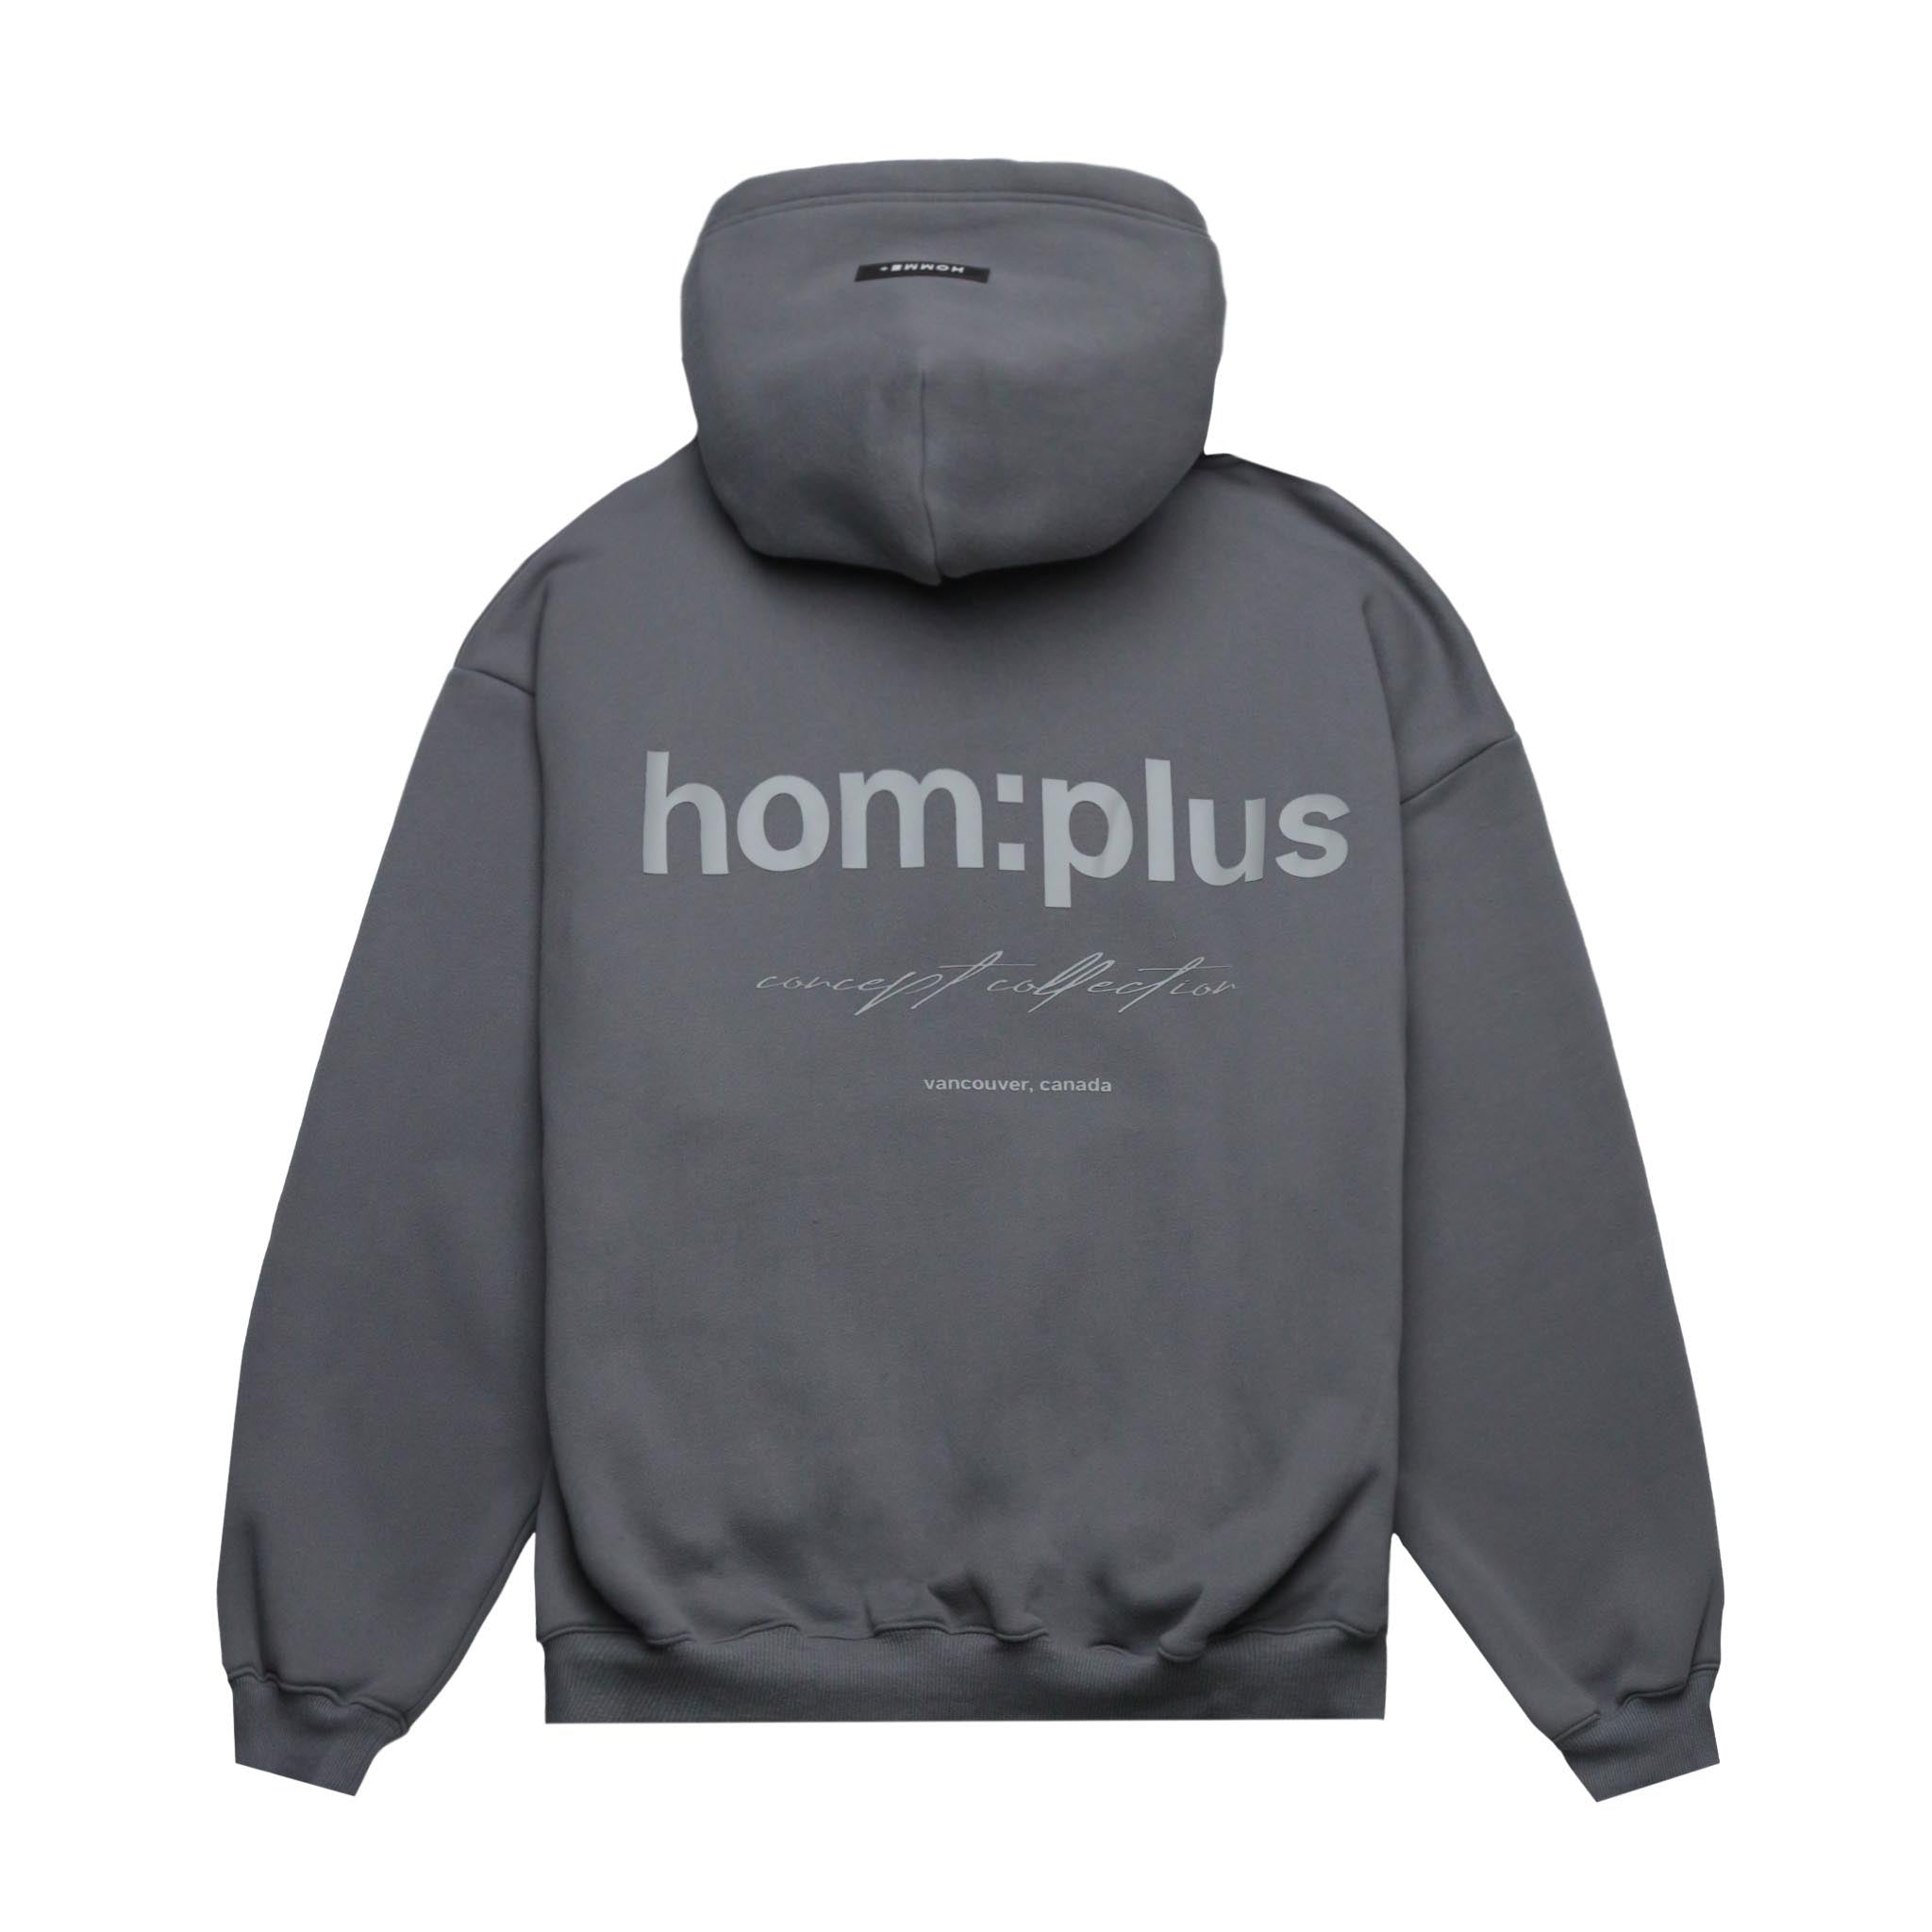 HOMME+ HOM:plus Hoodie Medium Grey